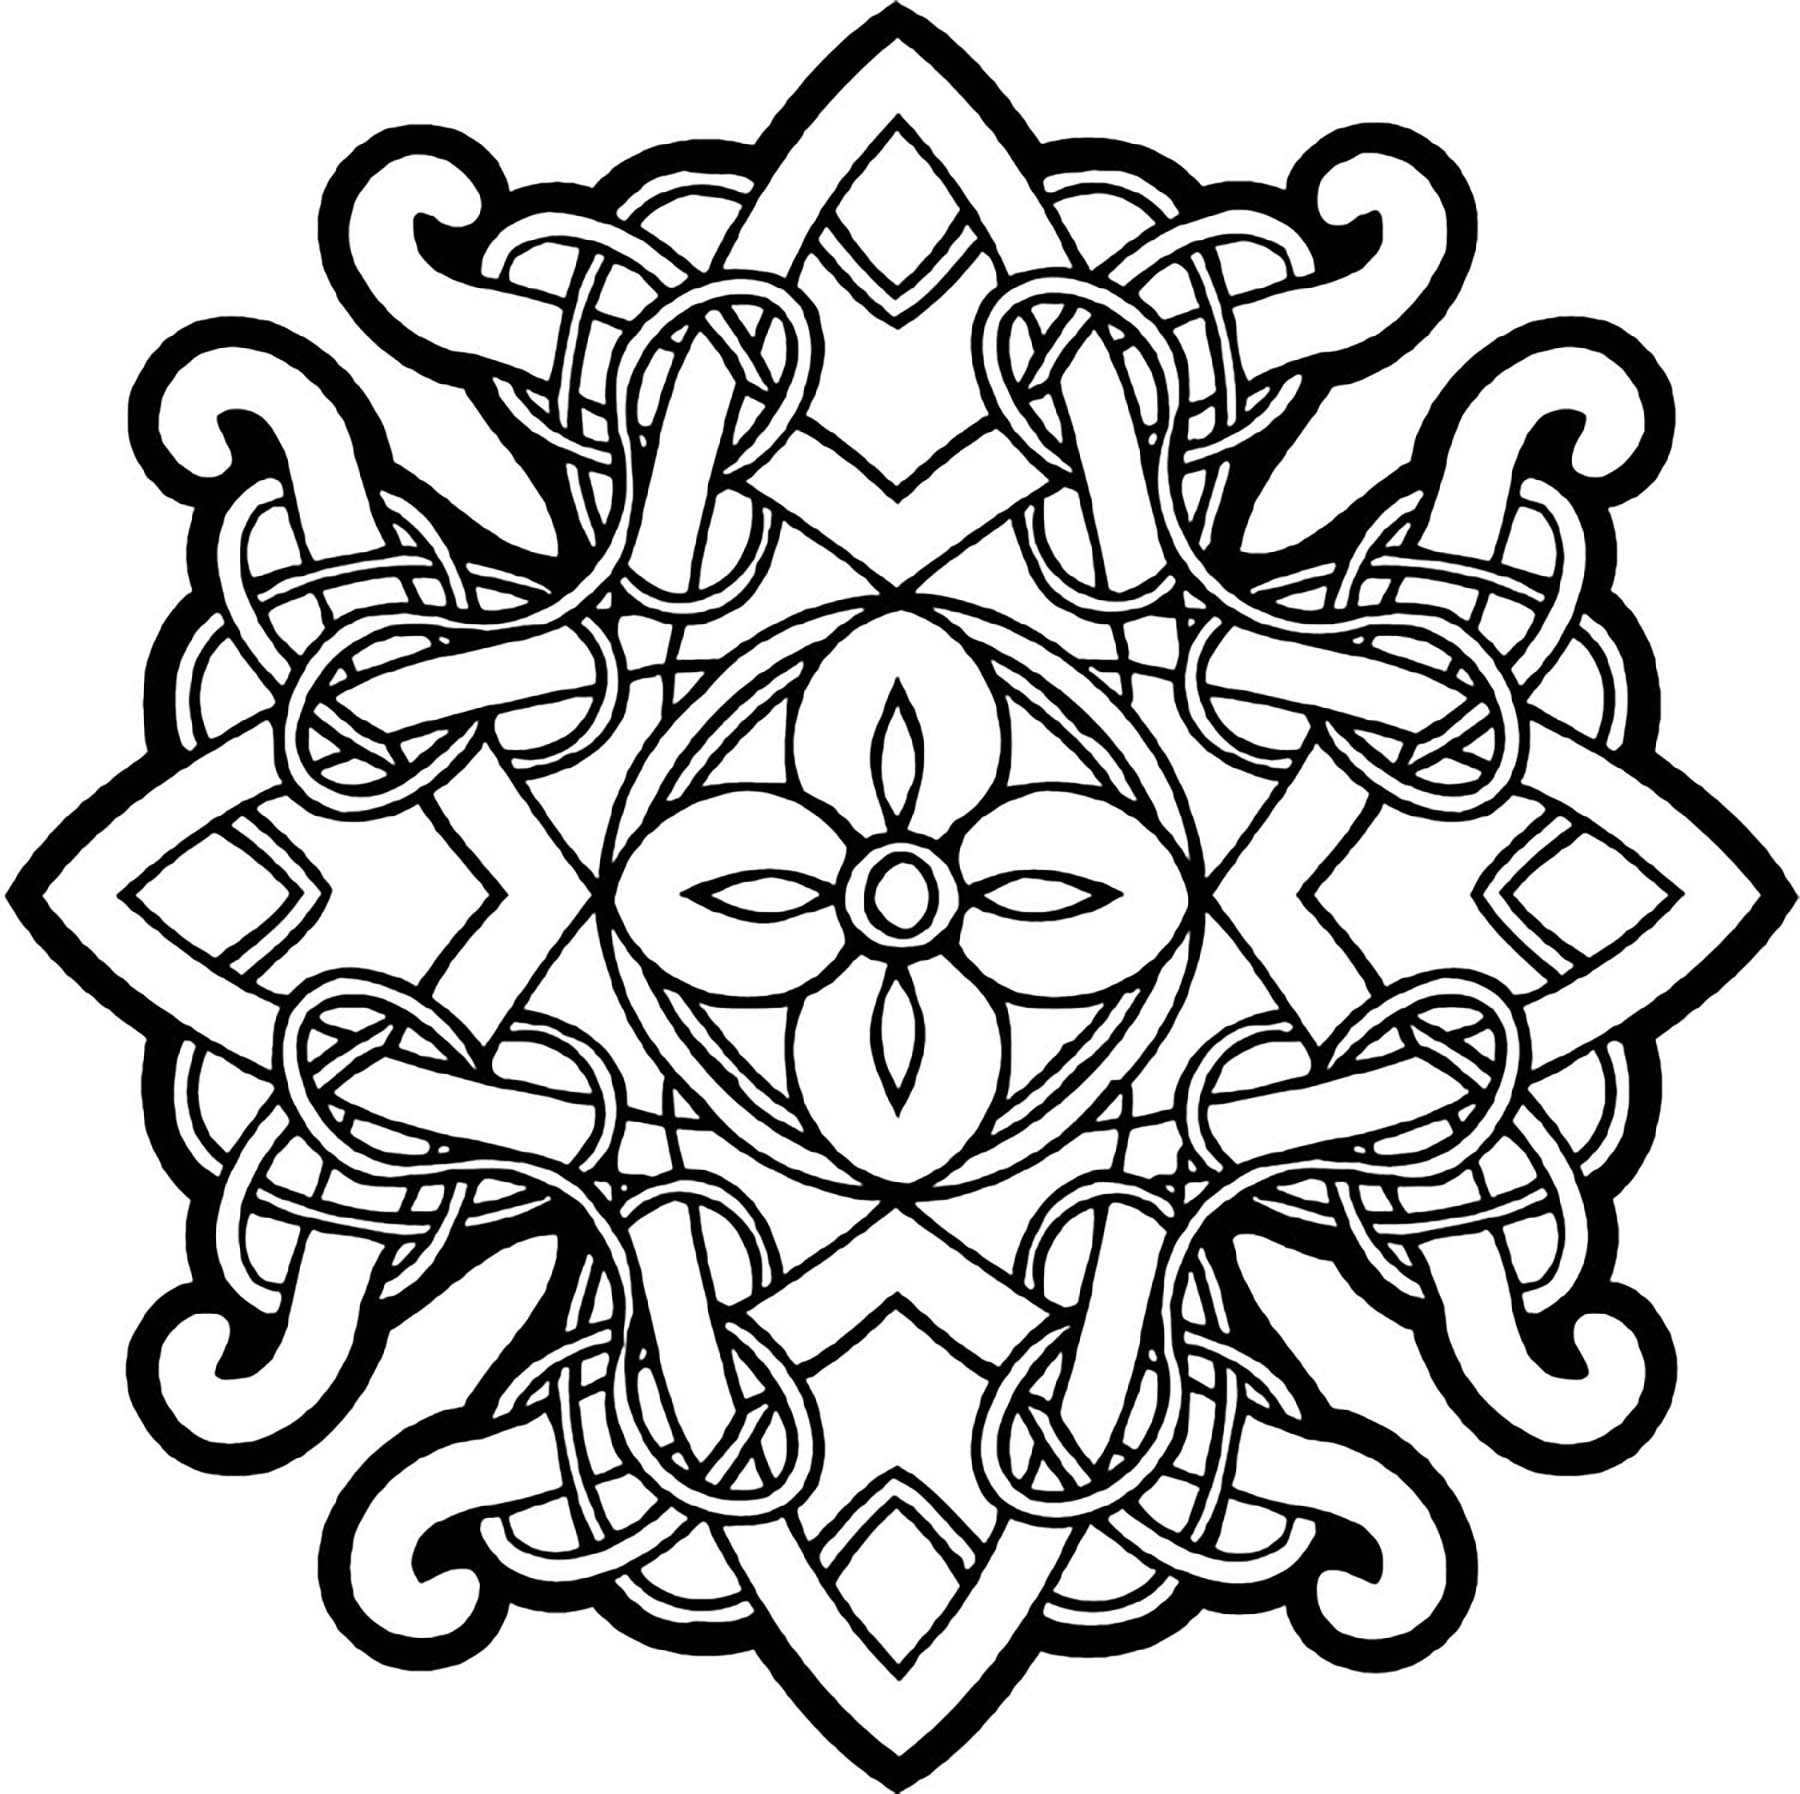 Un joli Mandala celtique. Des lignes entrelacées typiques de l'Art celtique, des traits épais et une symétrie parfaite. Voilà un Mandala à colorier qui vous fera voyager vers les belles plaines d'Irlande ...